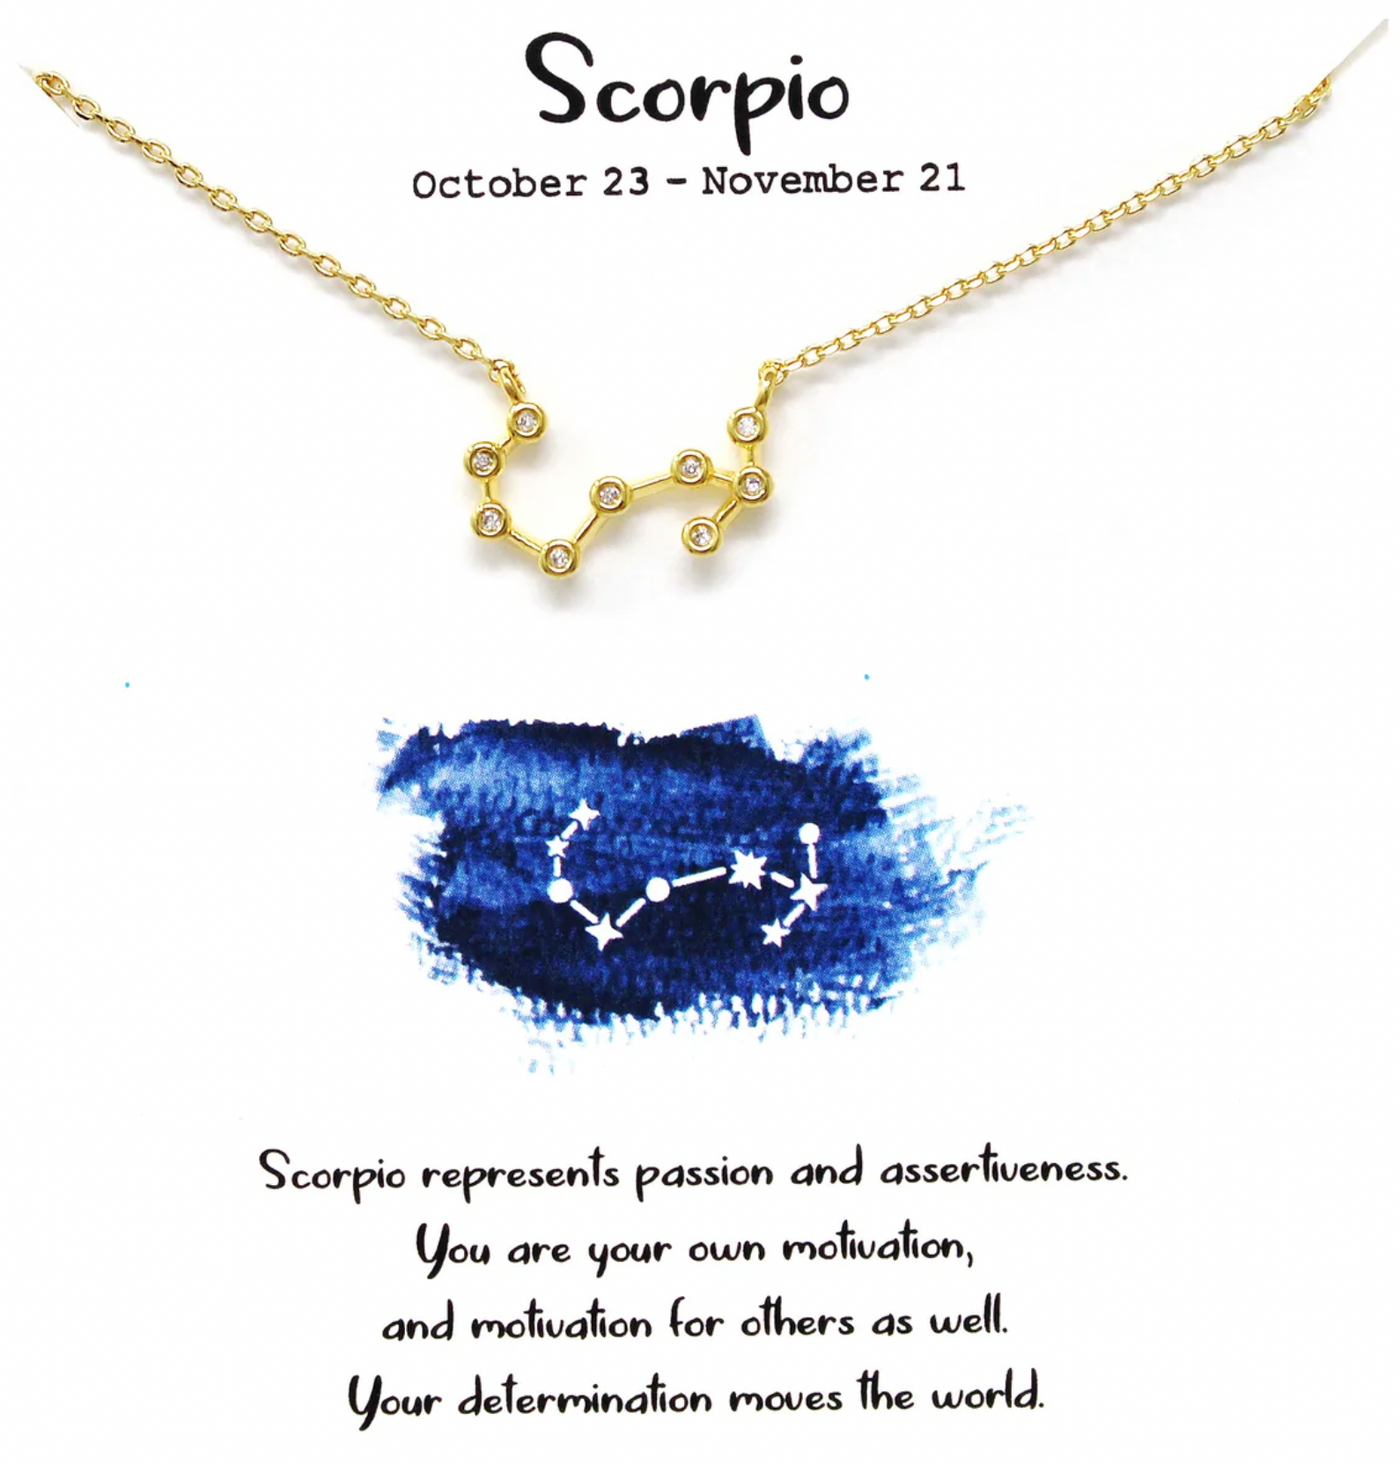 Scorpio Zodiac Sign Necklace October 23 - November 21